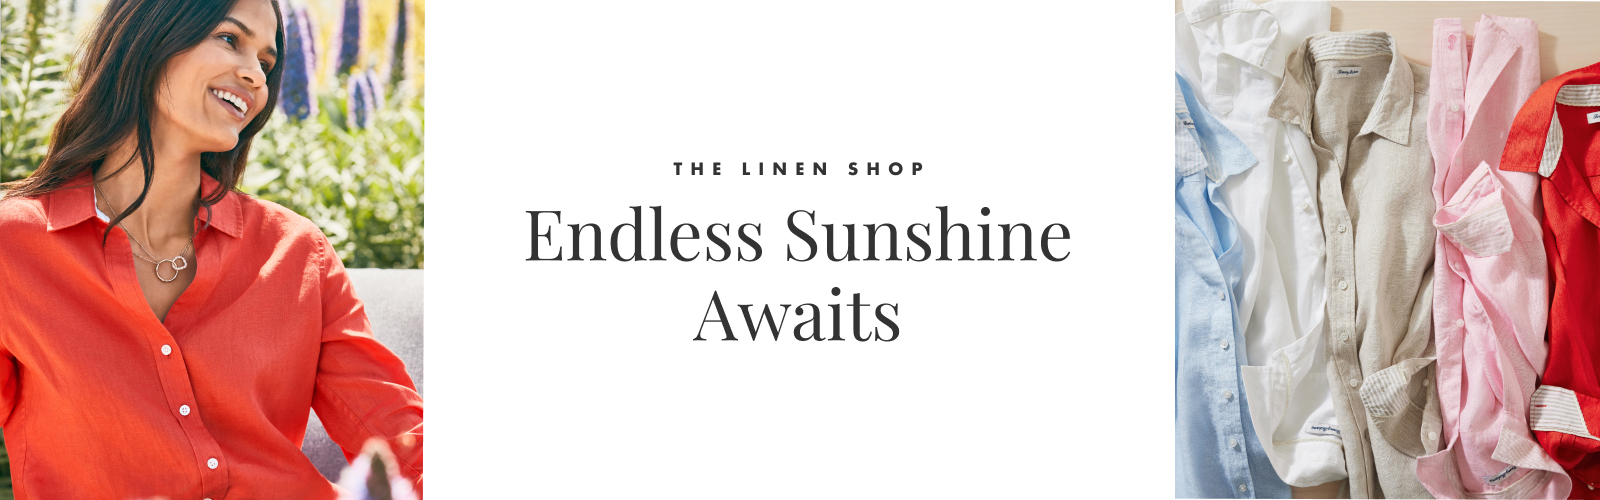 Linen Shop